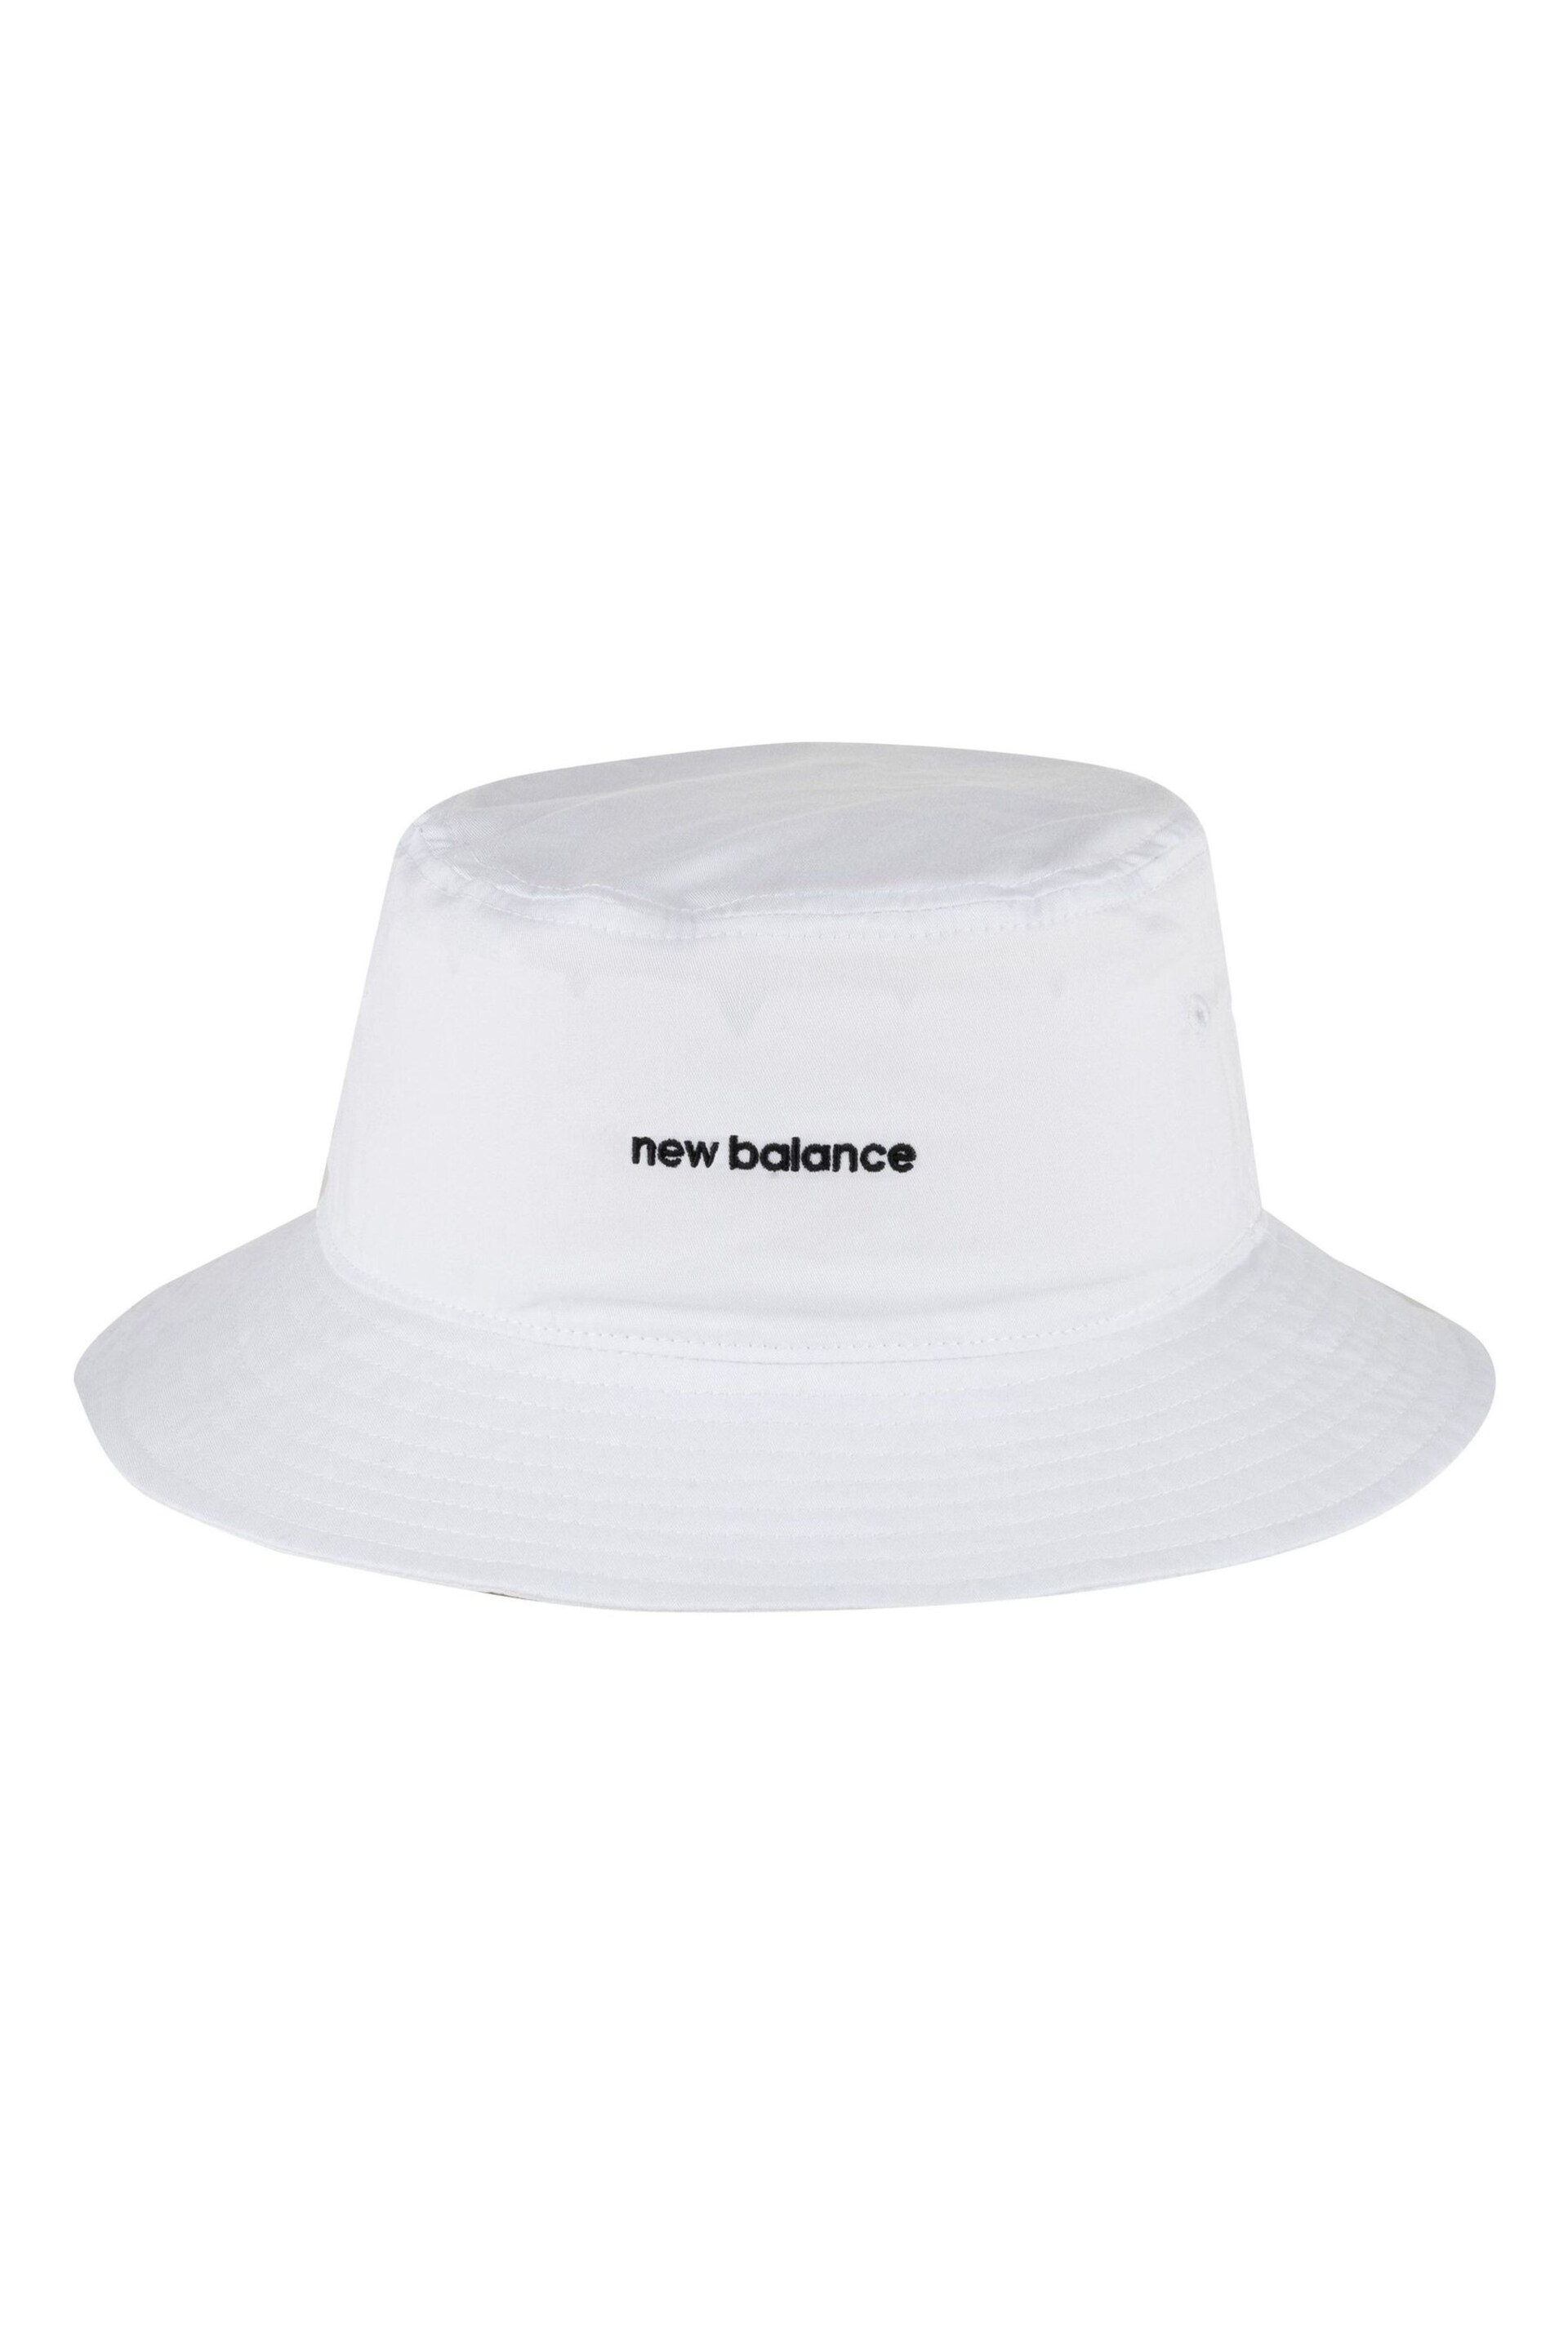 New Balance White Bucket Hat - Image 1 of 3